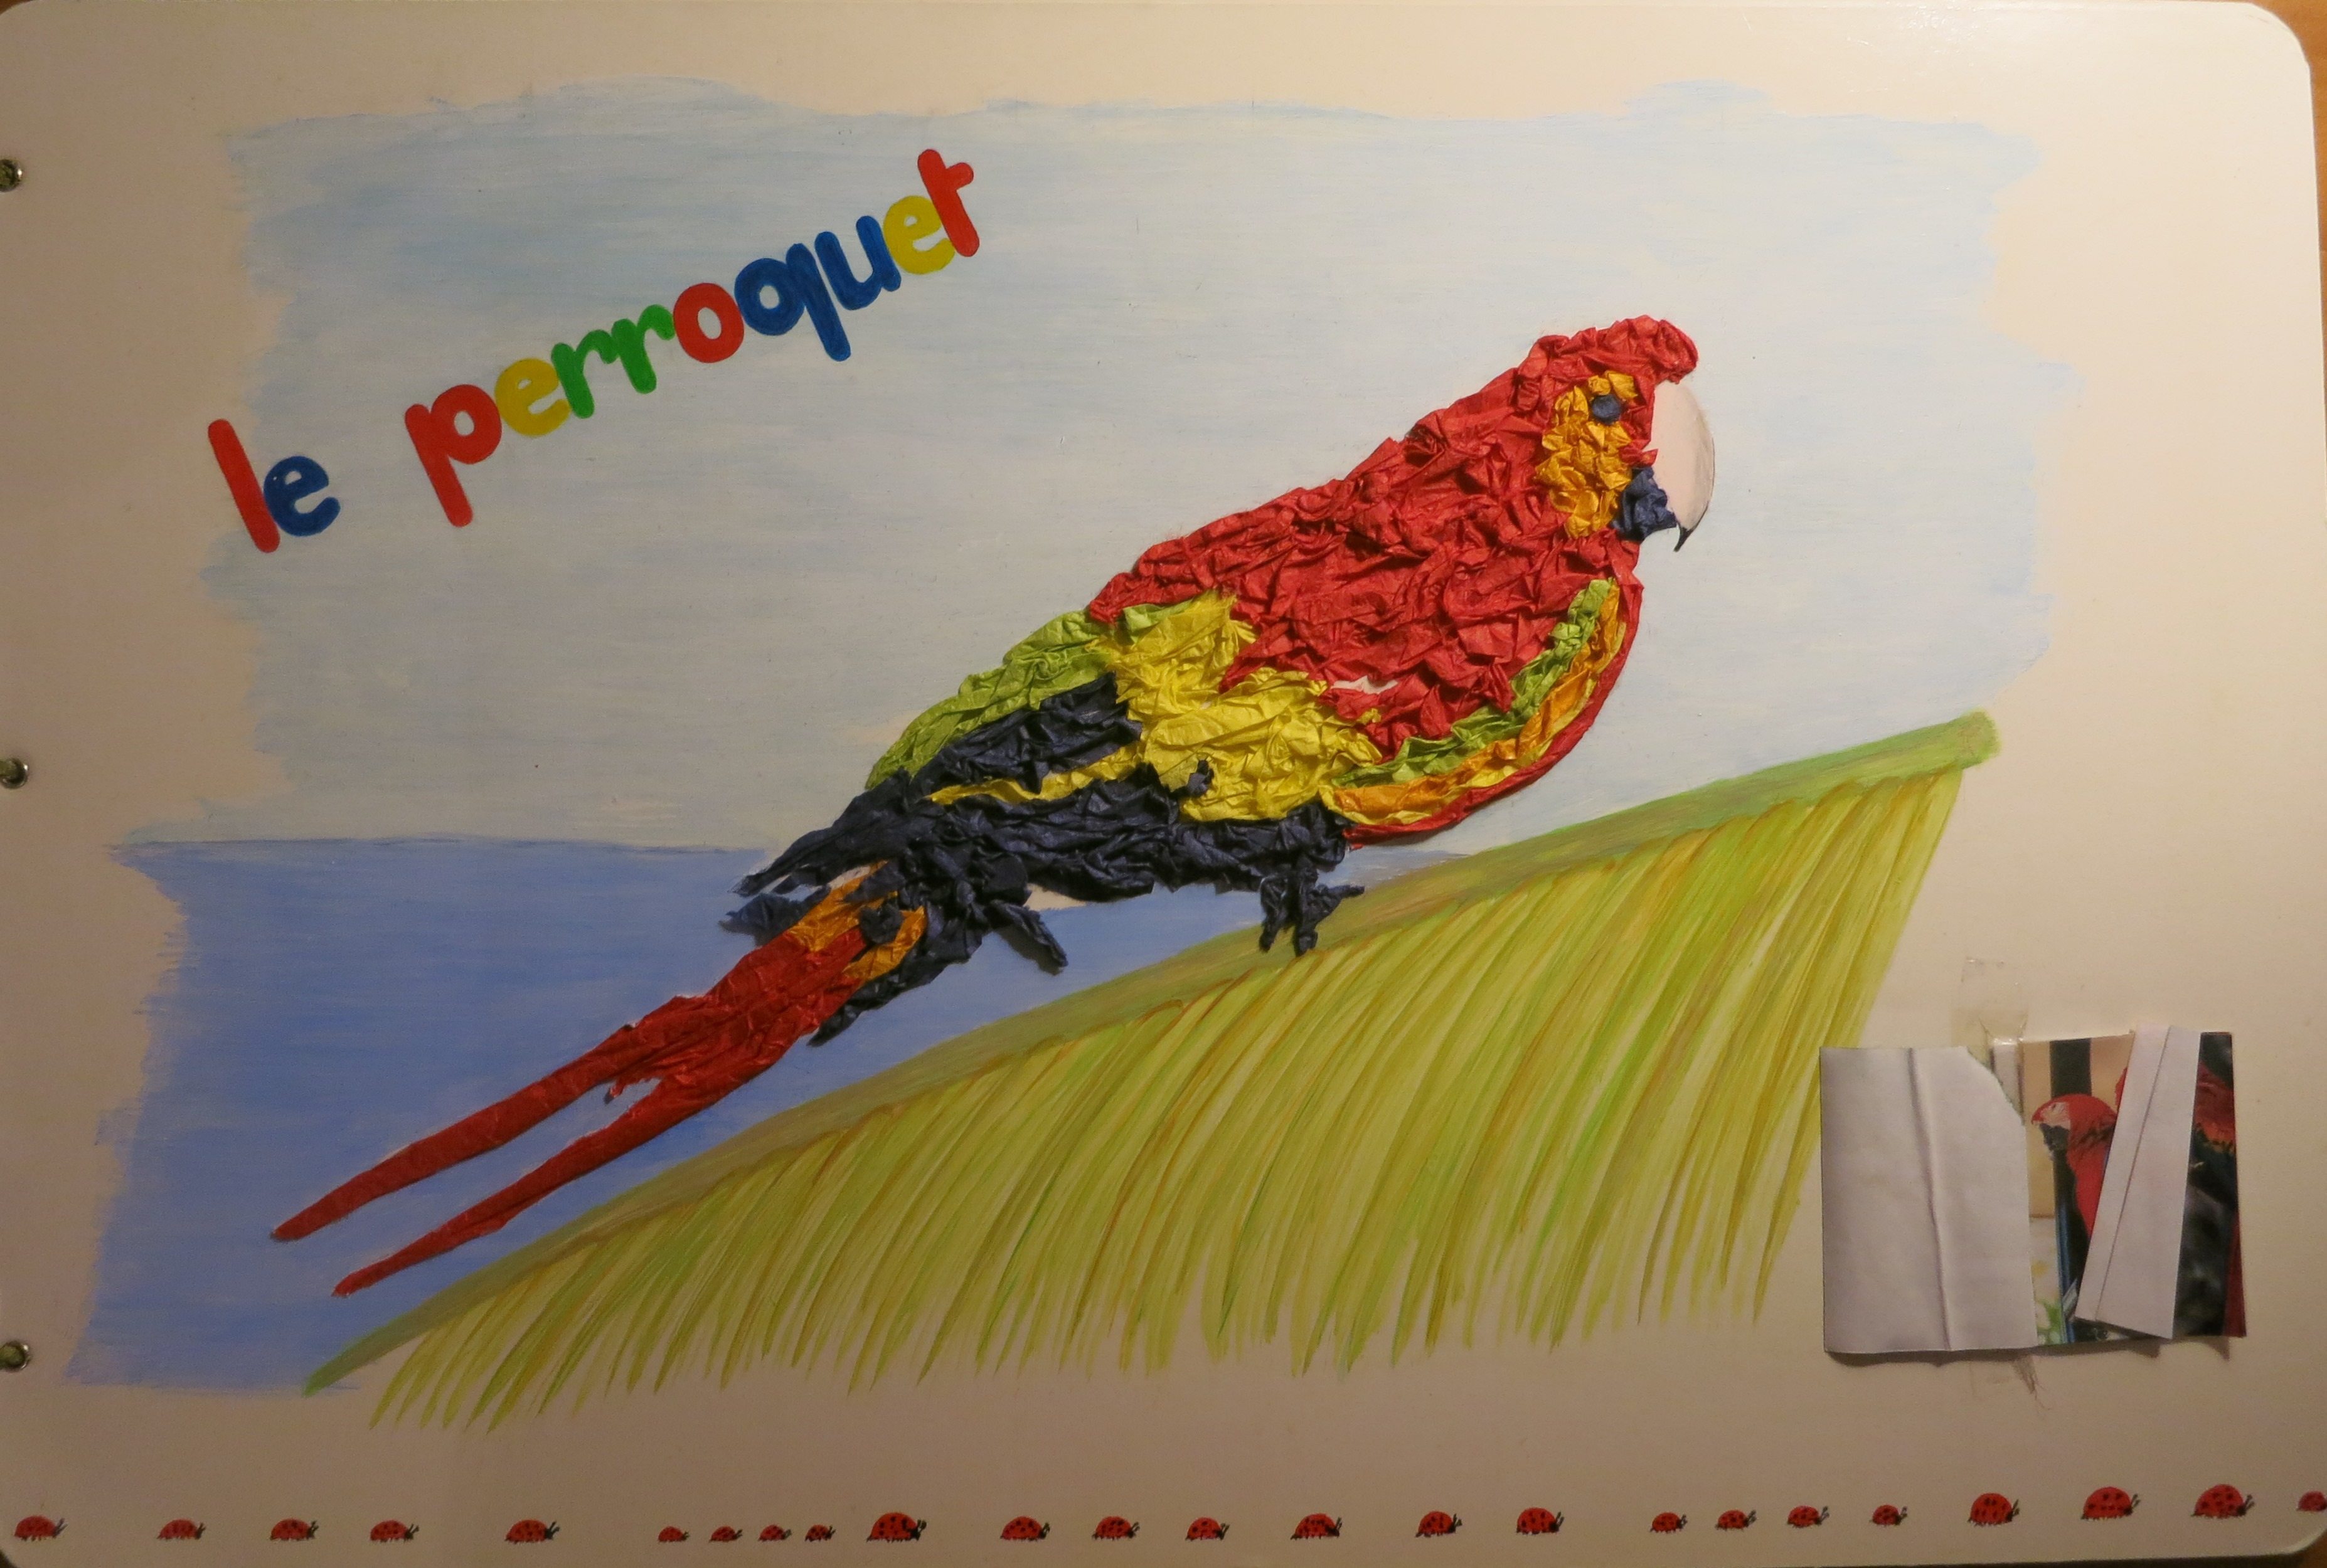 Le perroquet est en papier de couleurs que j'ai chiffonné et collé. En bas a droite j'ai réalisé un petit carnet de différentes photos de perroquet. 